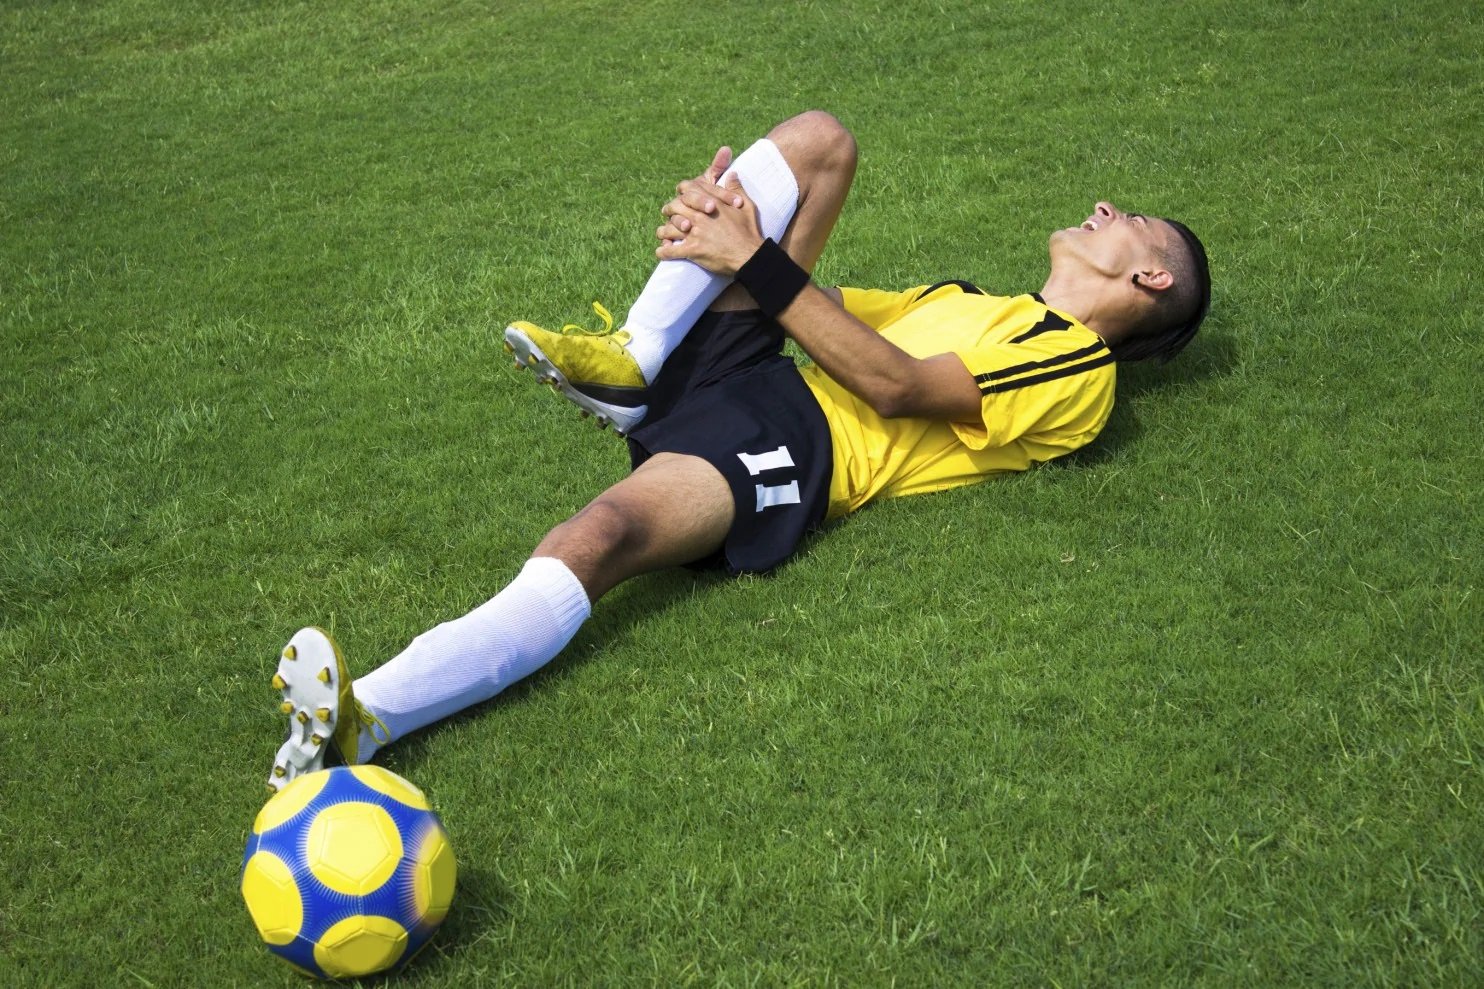 Gãy xương là một trong những chấn thương nghiêm trọng nhất khi chơi bóng